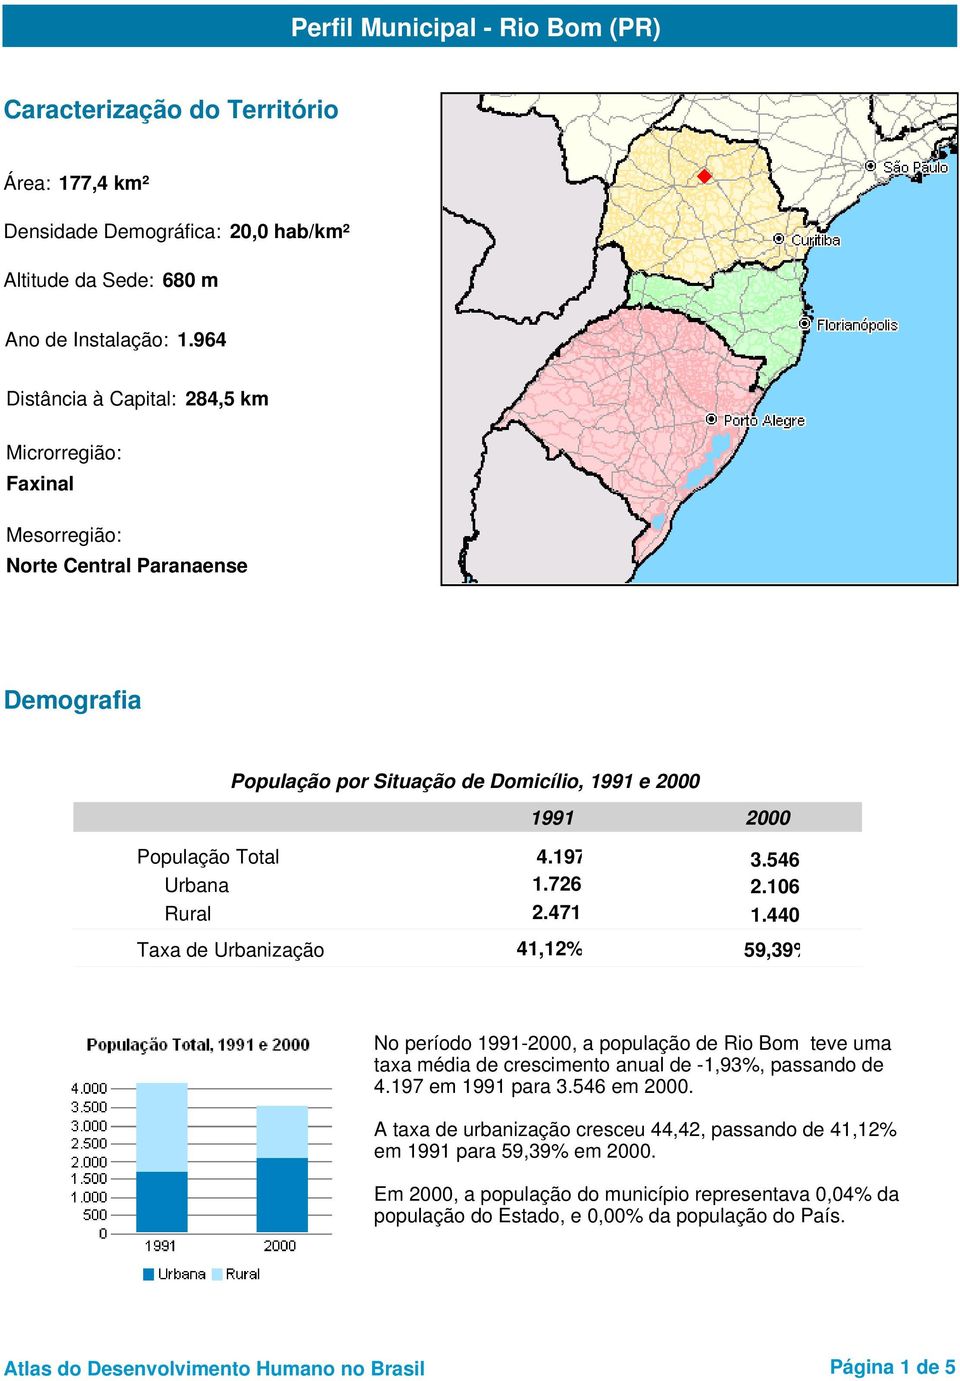 726 2.106 Rural 2.471 1.440 Taxa de Urbanização 41,12% 59,39% No período -, a população de Rio Bom teve uma taxa média de crescimento anual de -1,93%, passando de 4.197 em para 3.